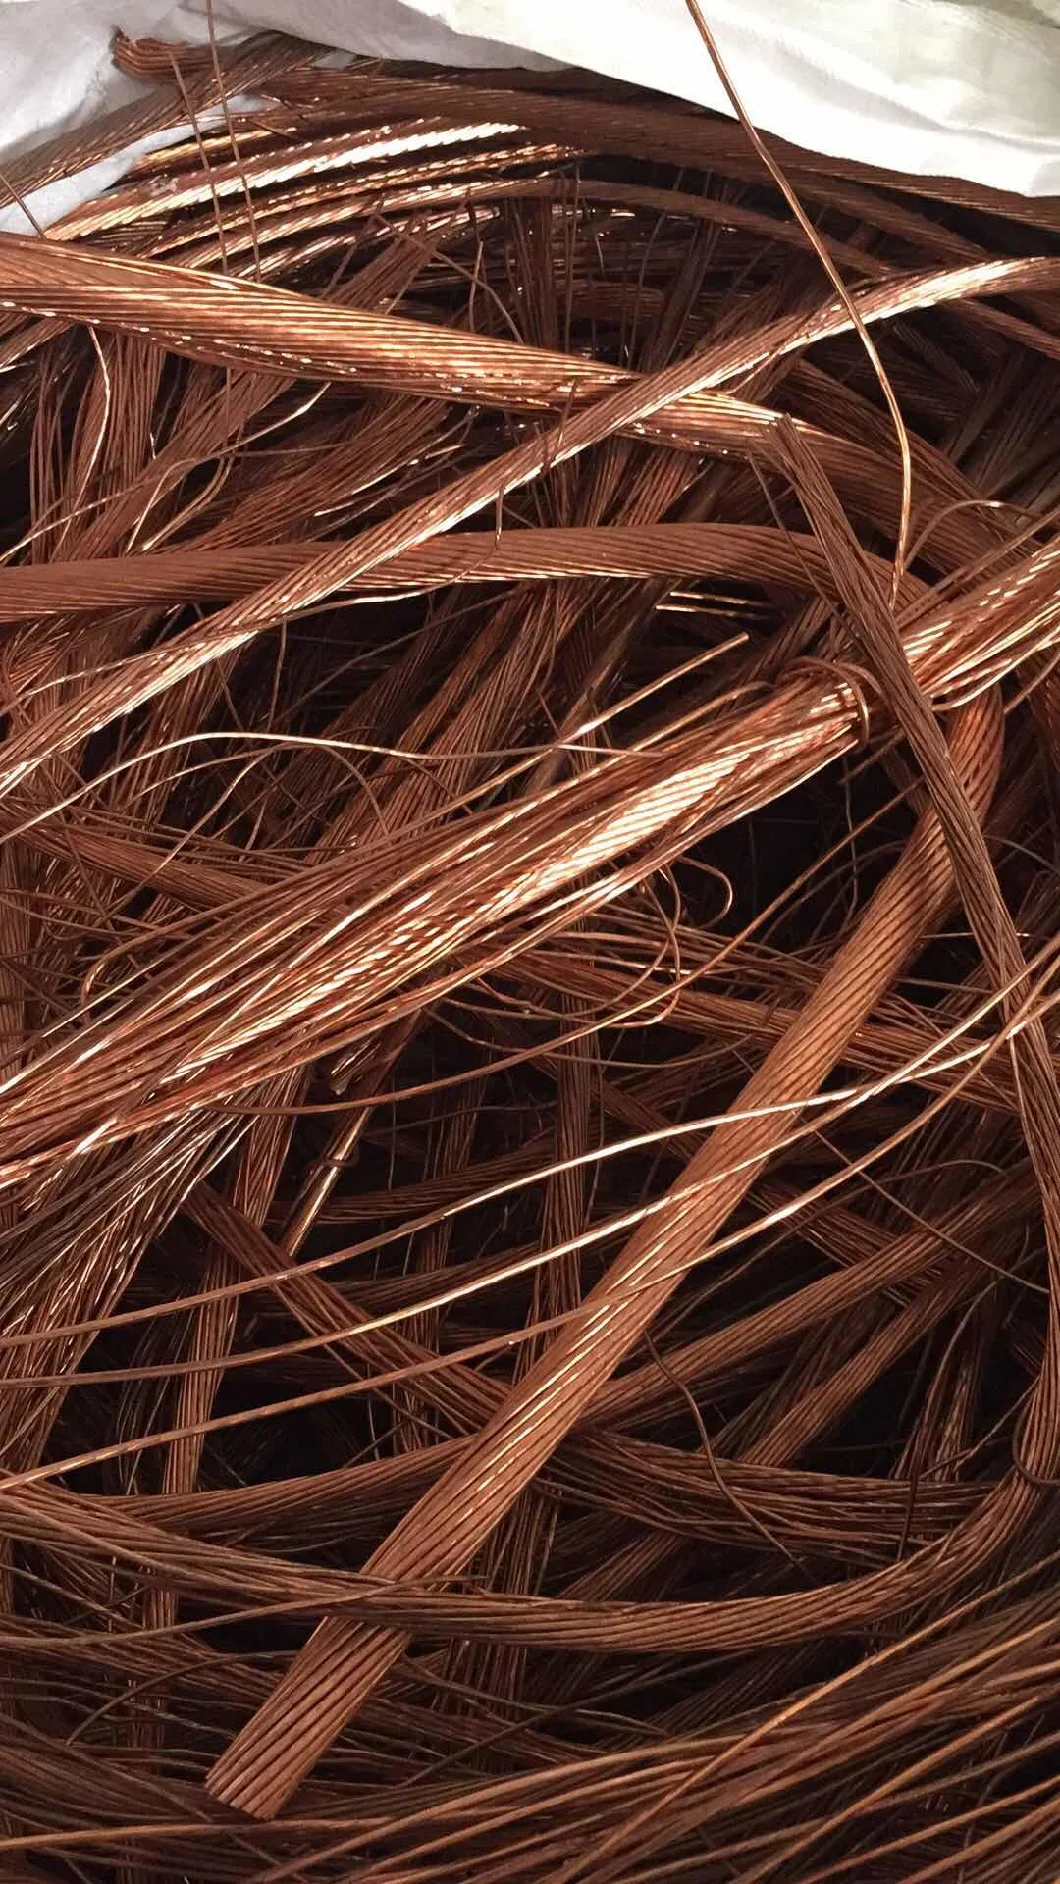 High Purity Copper Wire Scrap 99.99%, Copper Scrapmill-Berry Copper Factory Price